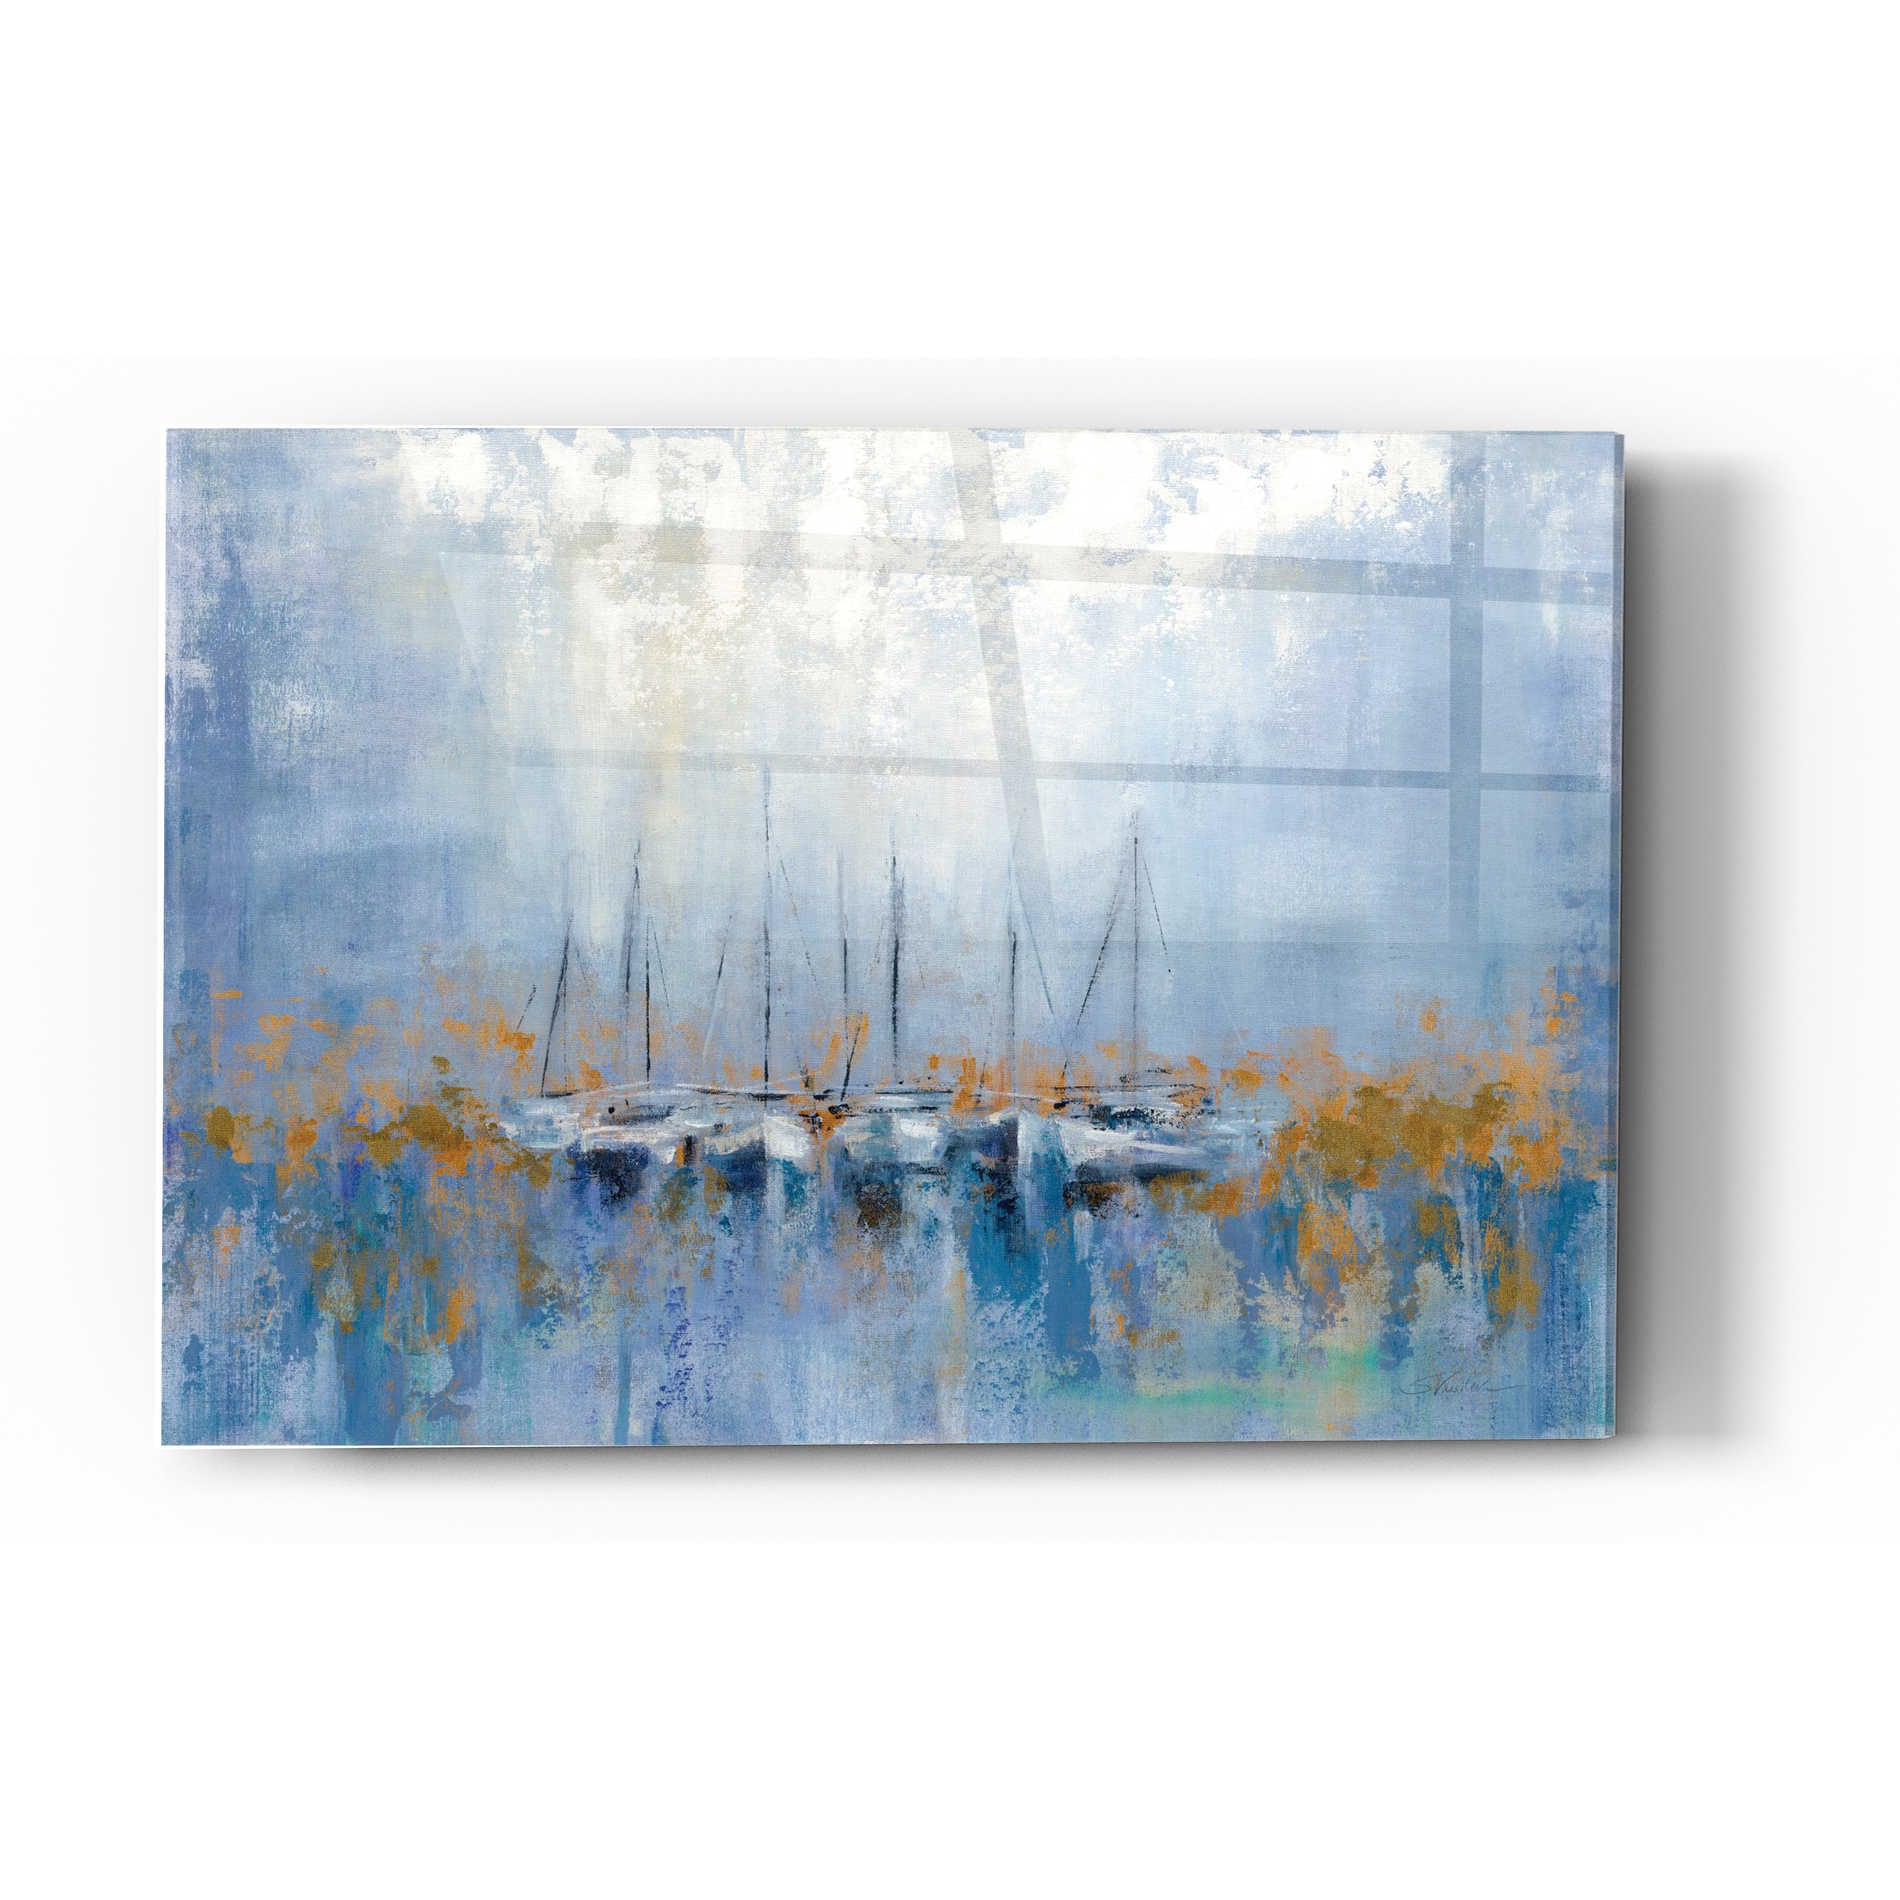 Epic Art 'Boats in the Harbor' by Silvia Vassileva, Acrylic Glass Wall Art,12x16